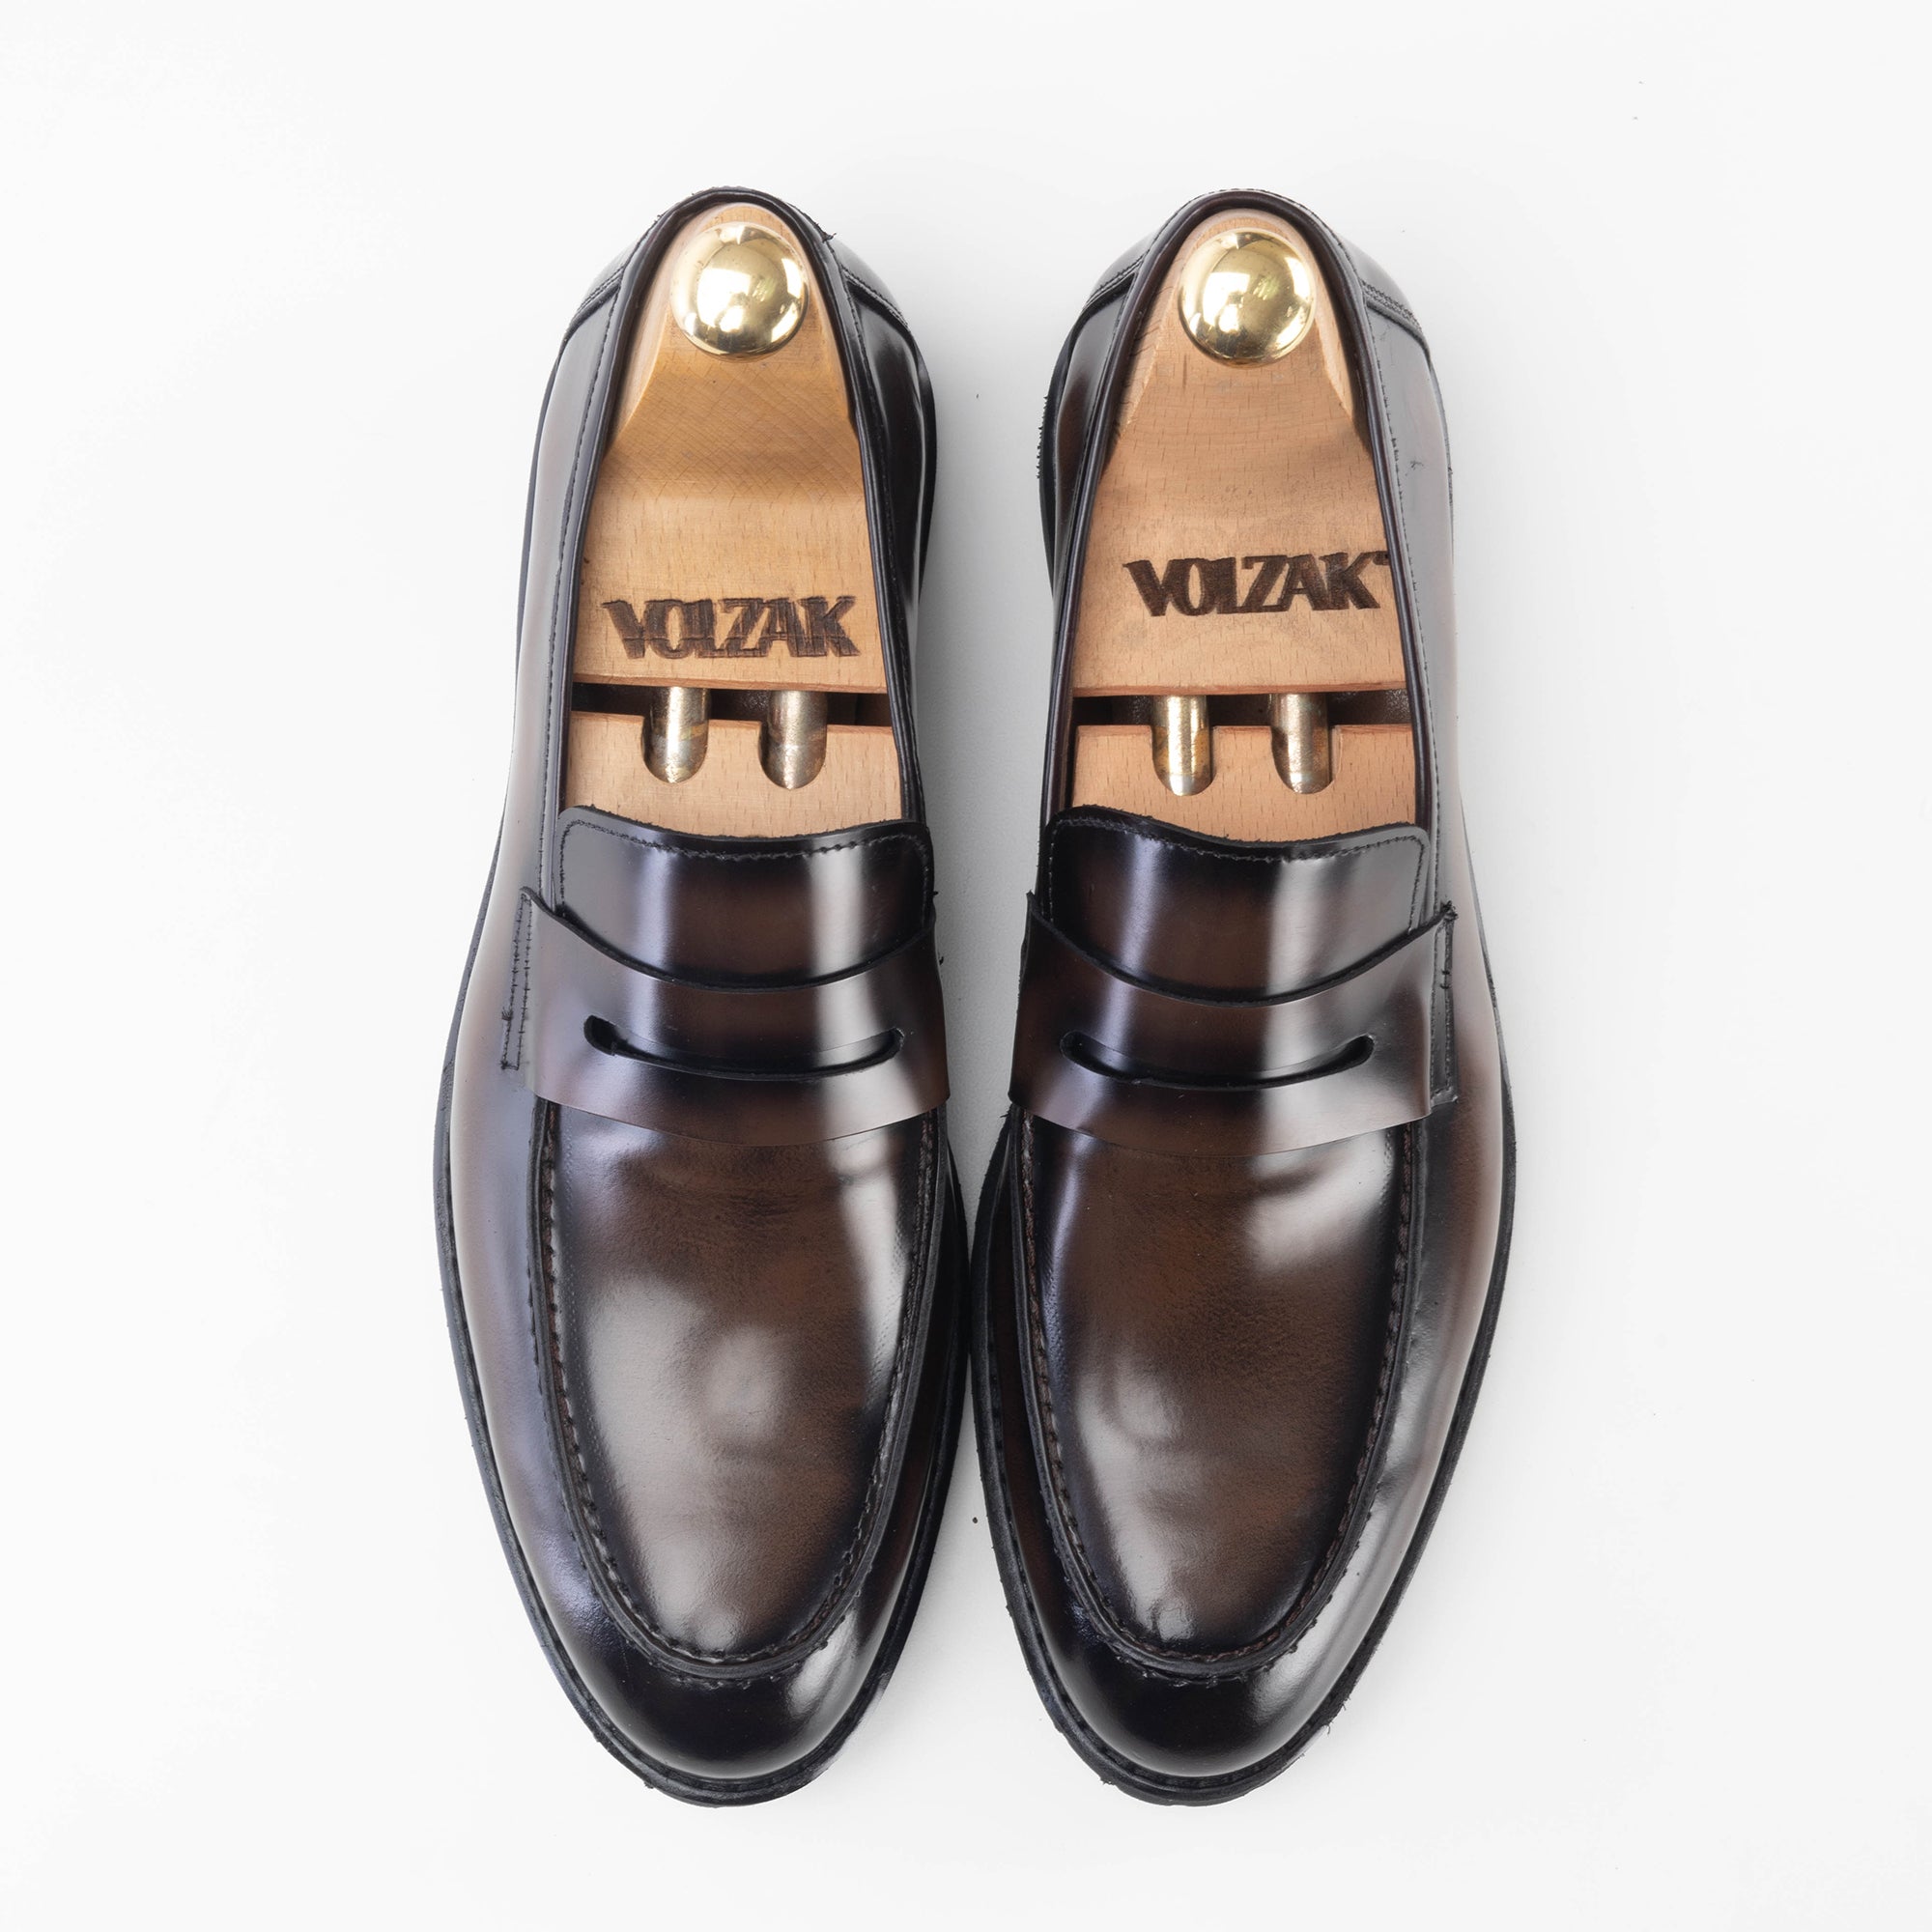 '''5164 chaussure en cuir Démasquable marron